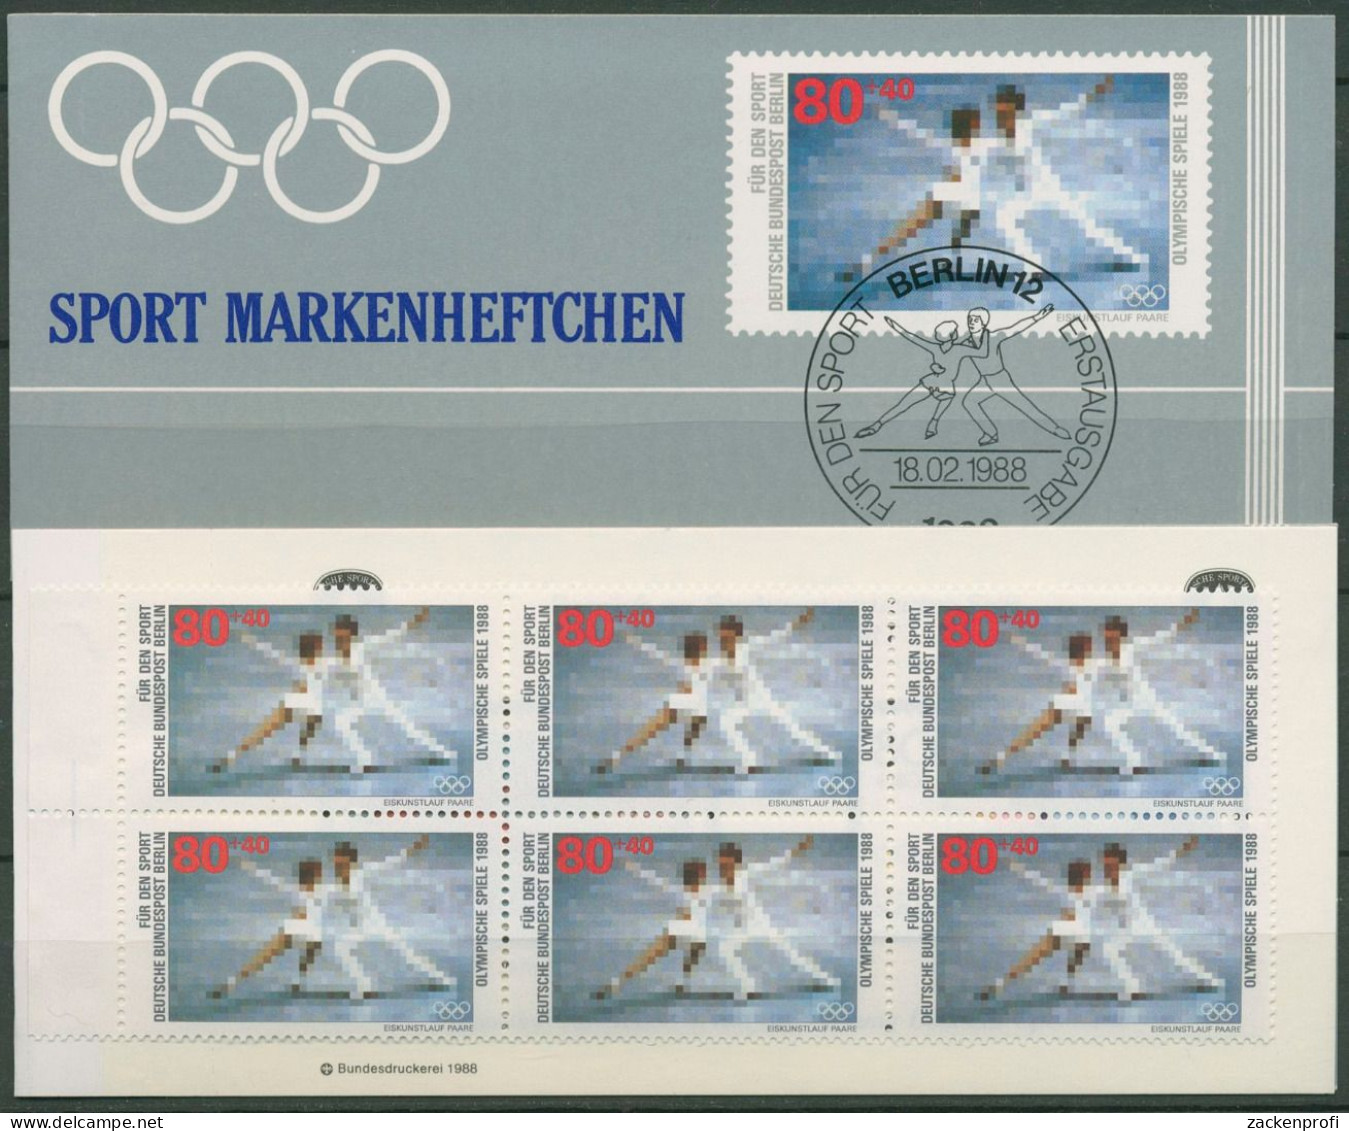 Berlin Deutsche Sporthilfe 1988 Markenheftchen SMH 10 (802) Postfrisch (C99134) - Carnets